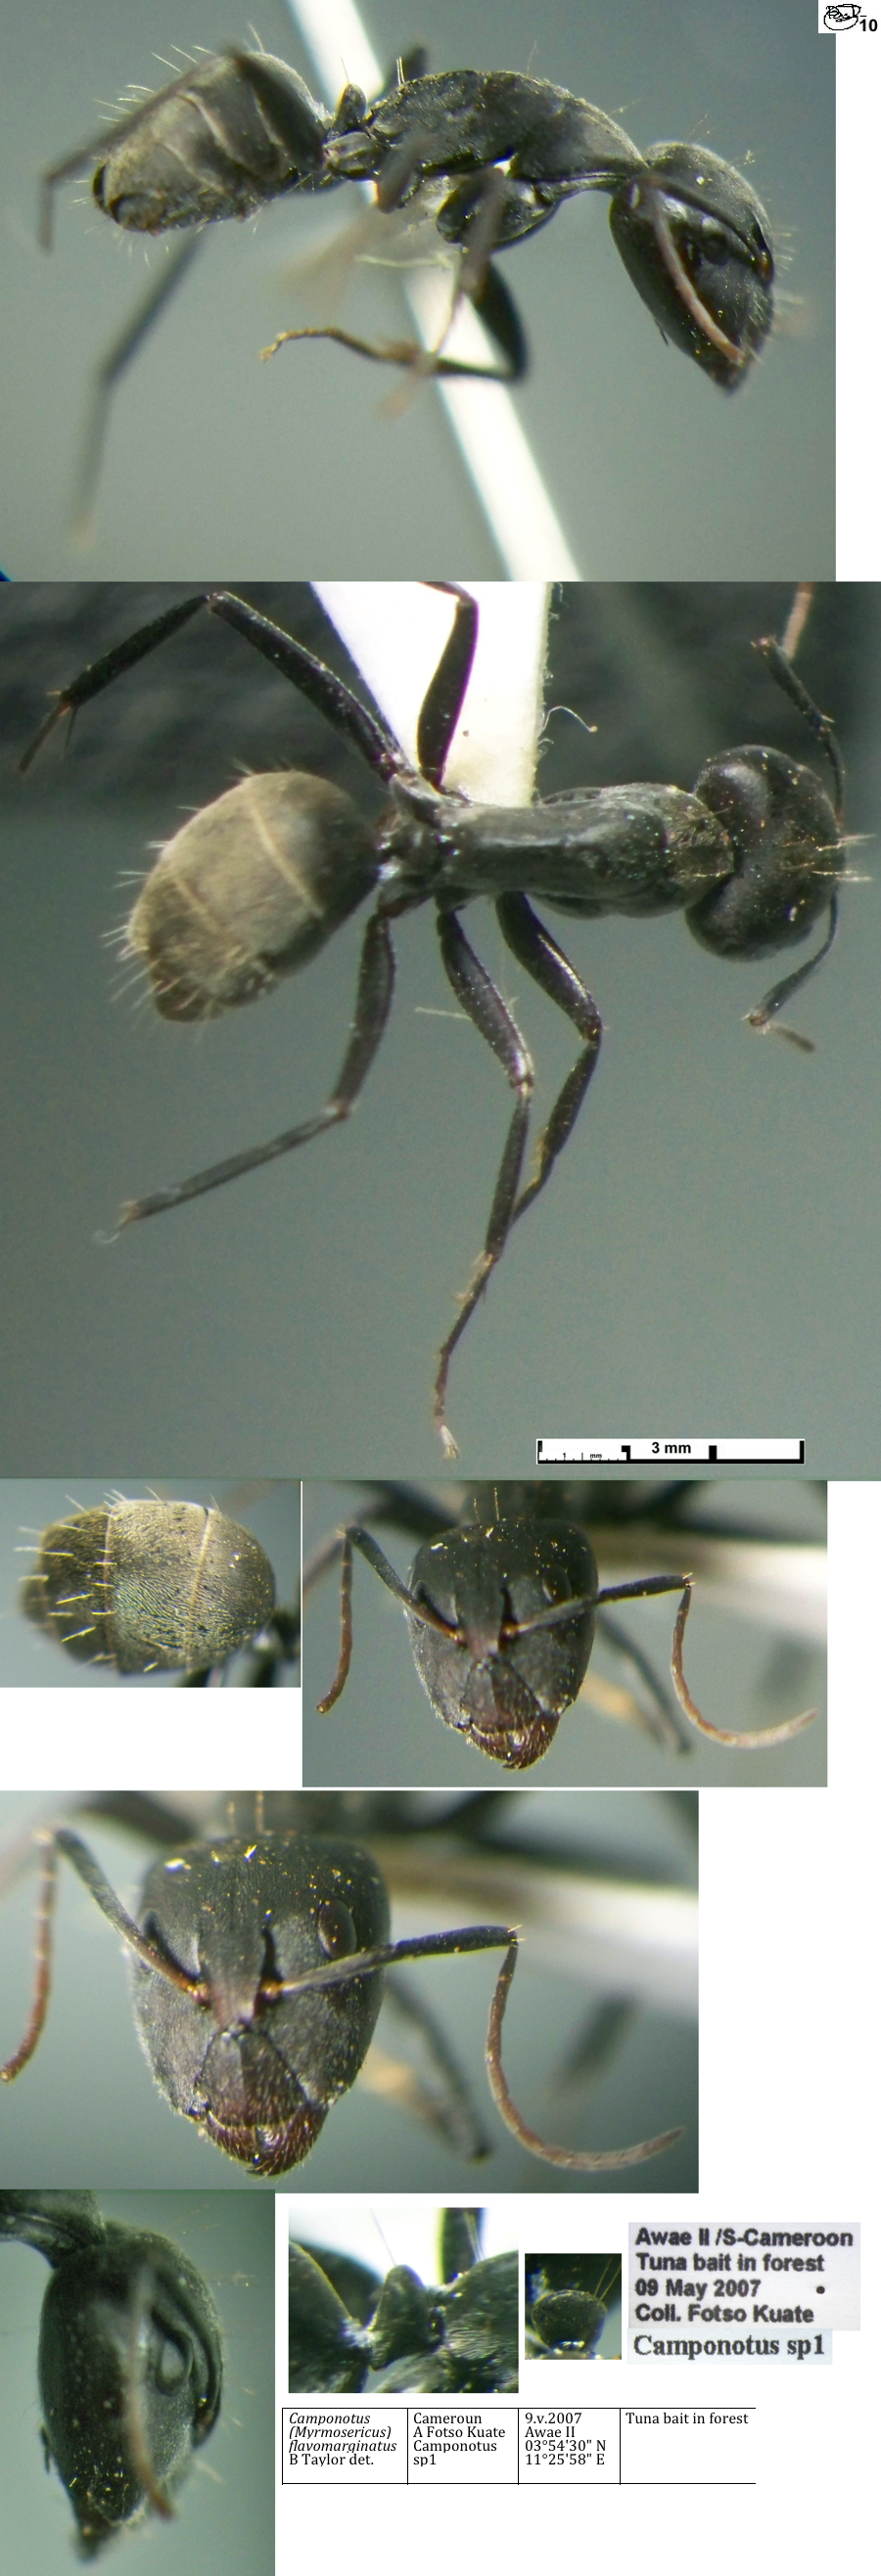 {Camponotus flavomarginatus major}